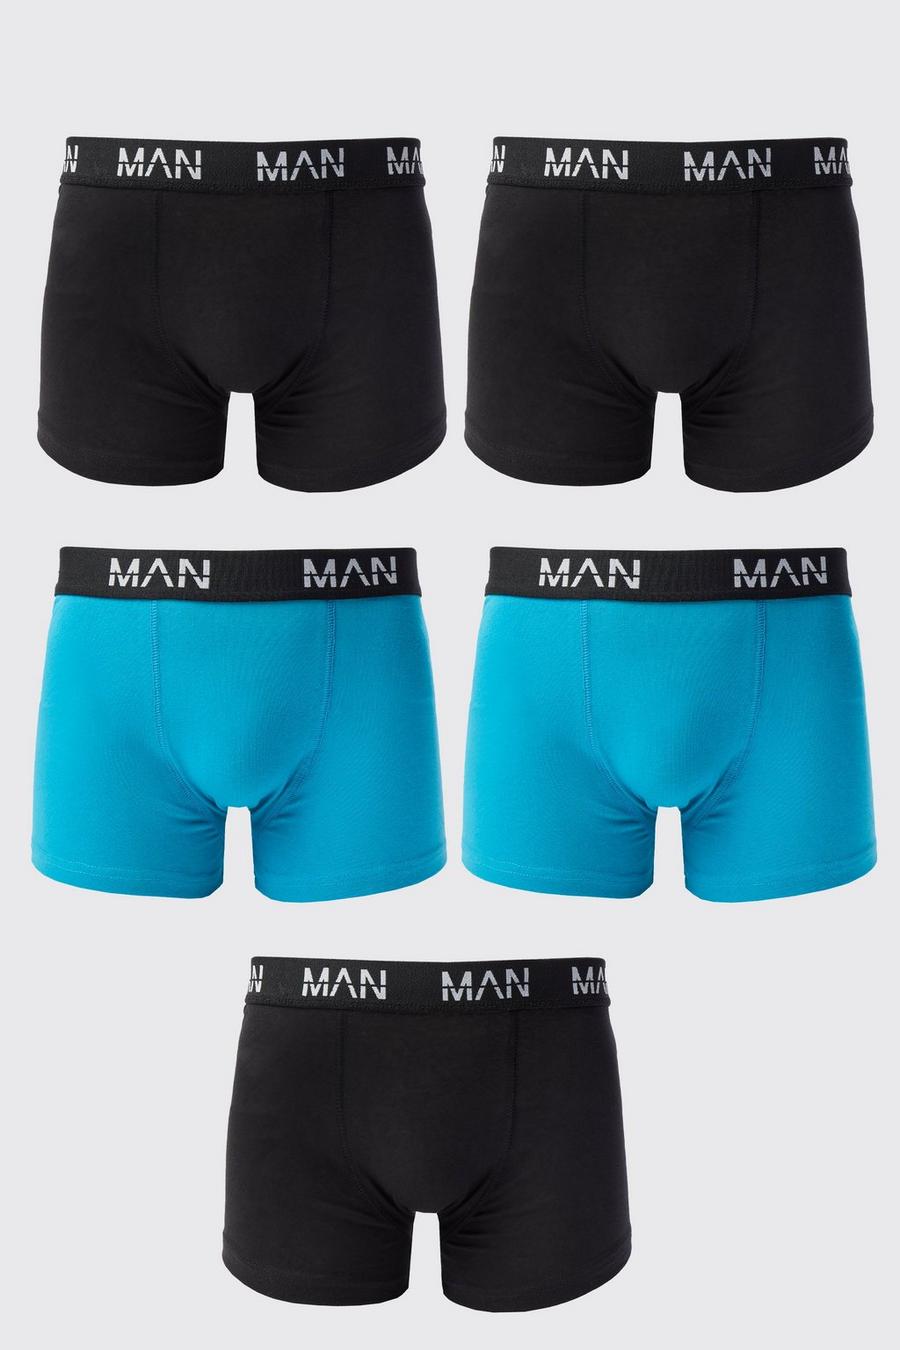 NEW -  Essential Men's White Briefs Underwear - 5 pack